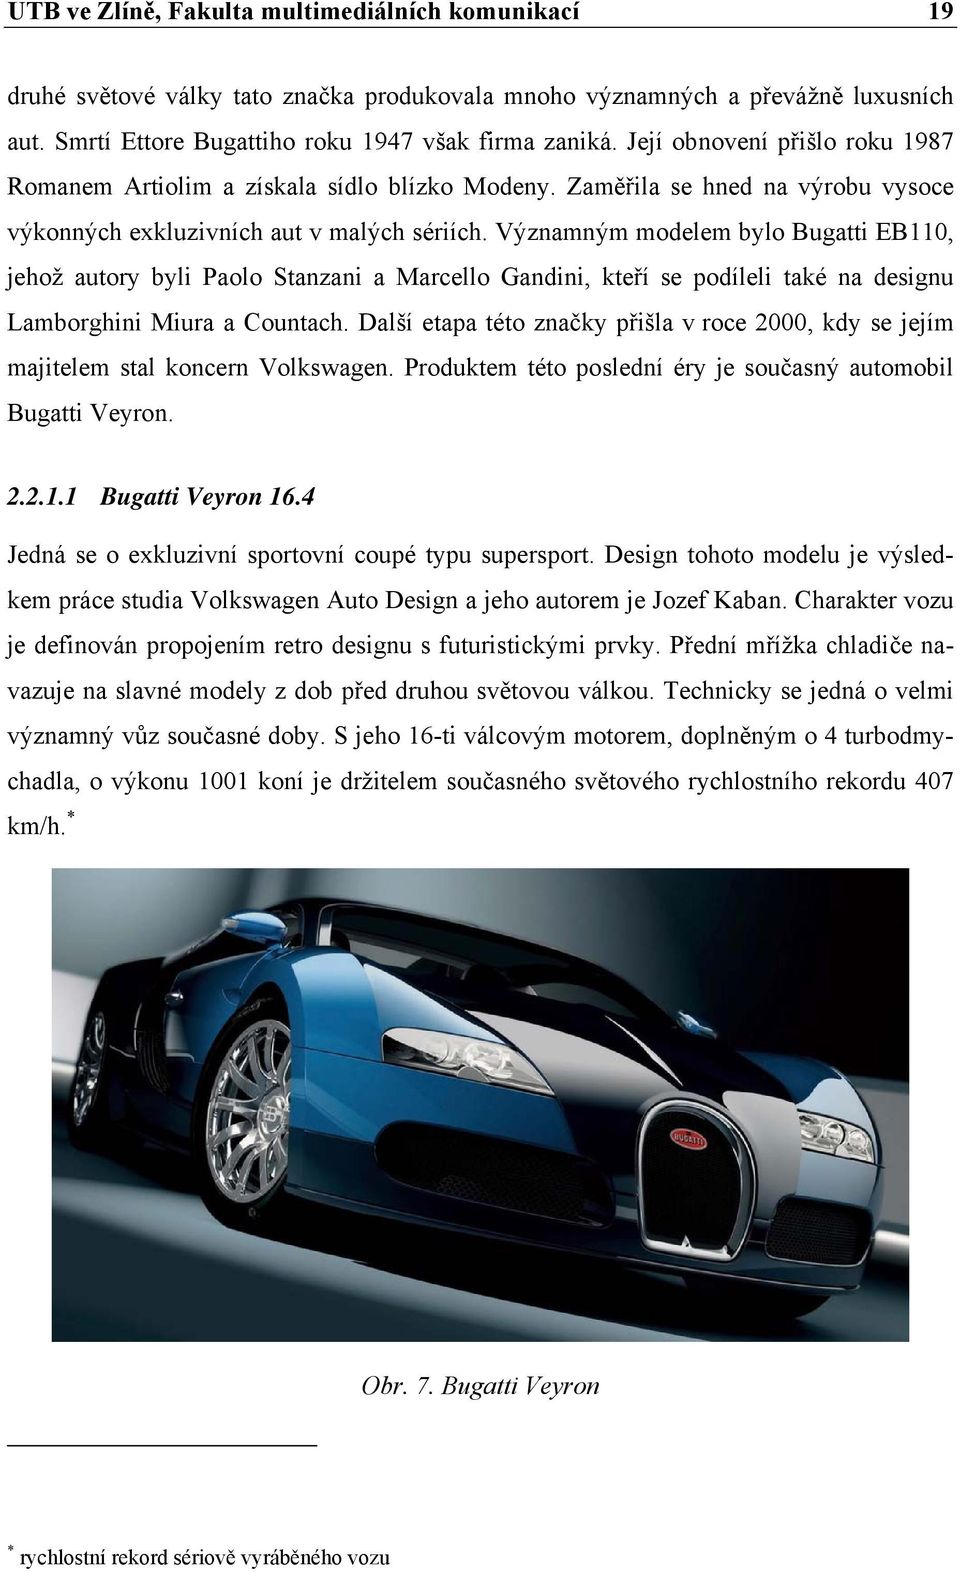 Významným modelem bylo Bugatti EB110, jehož autory byli Paolo Stanzani a Marcello Gandini, kteří se podíleli také na designu Lamborghini Miura a Countach.